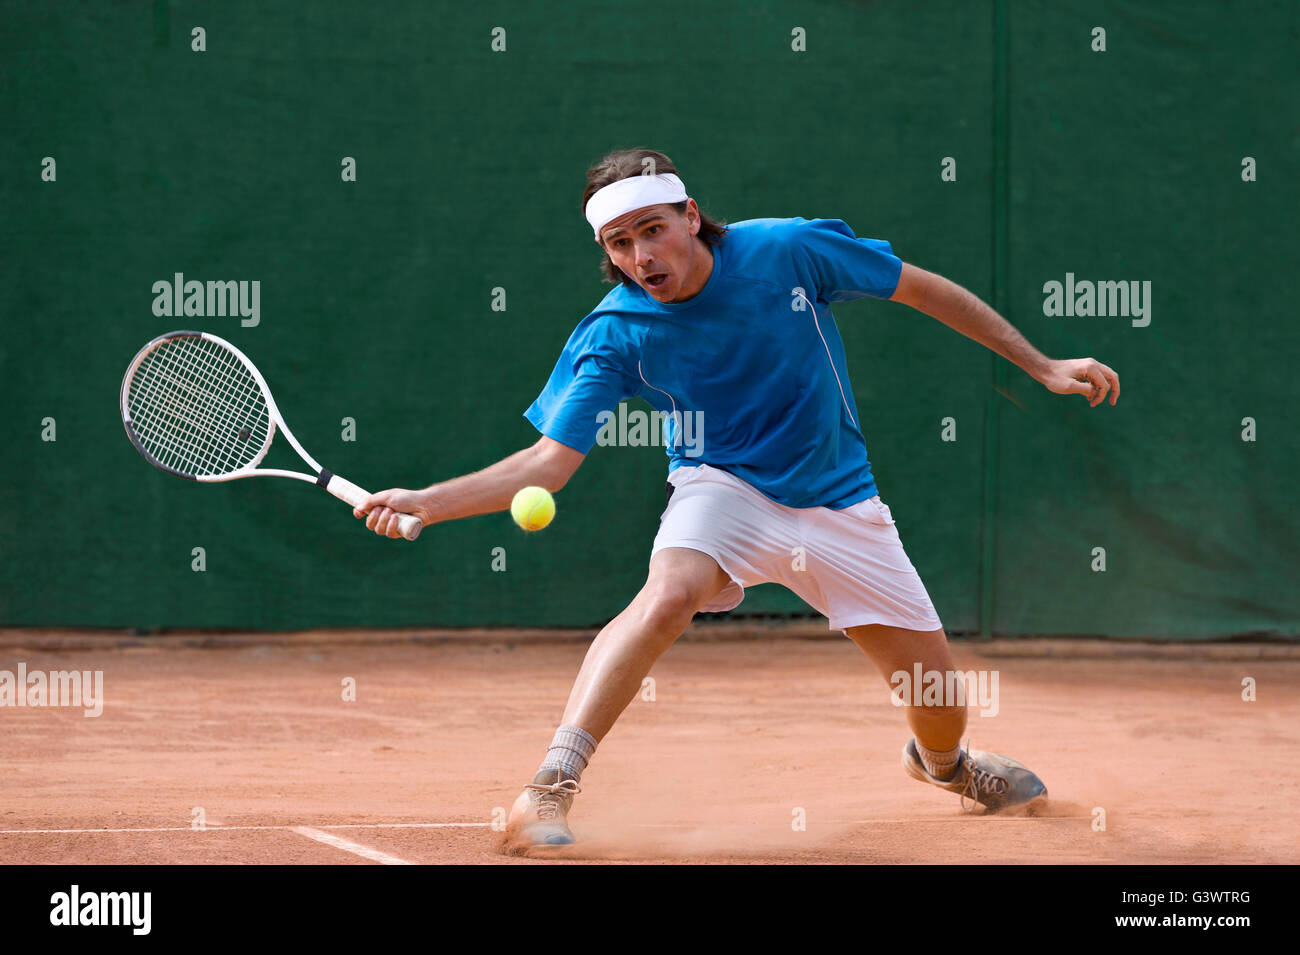 Jeune homme jouant au tennis Banque D'Images